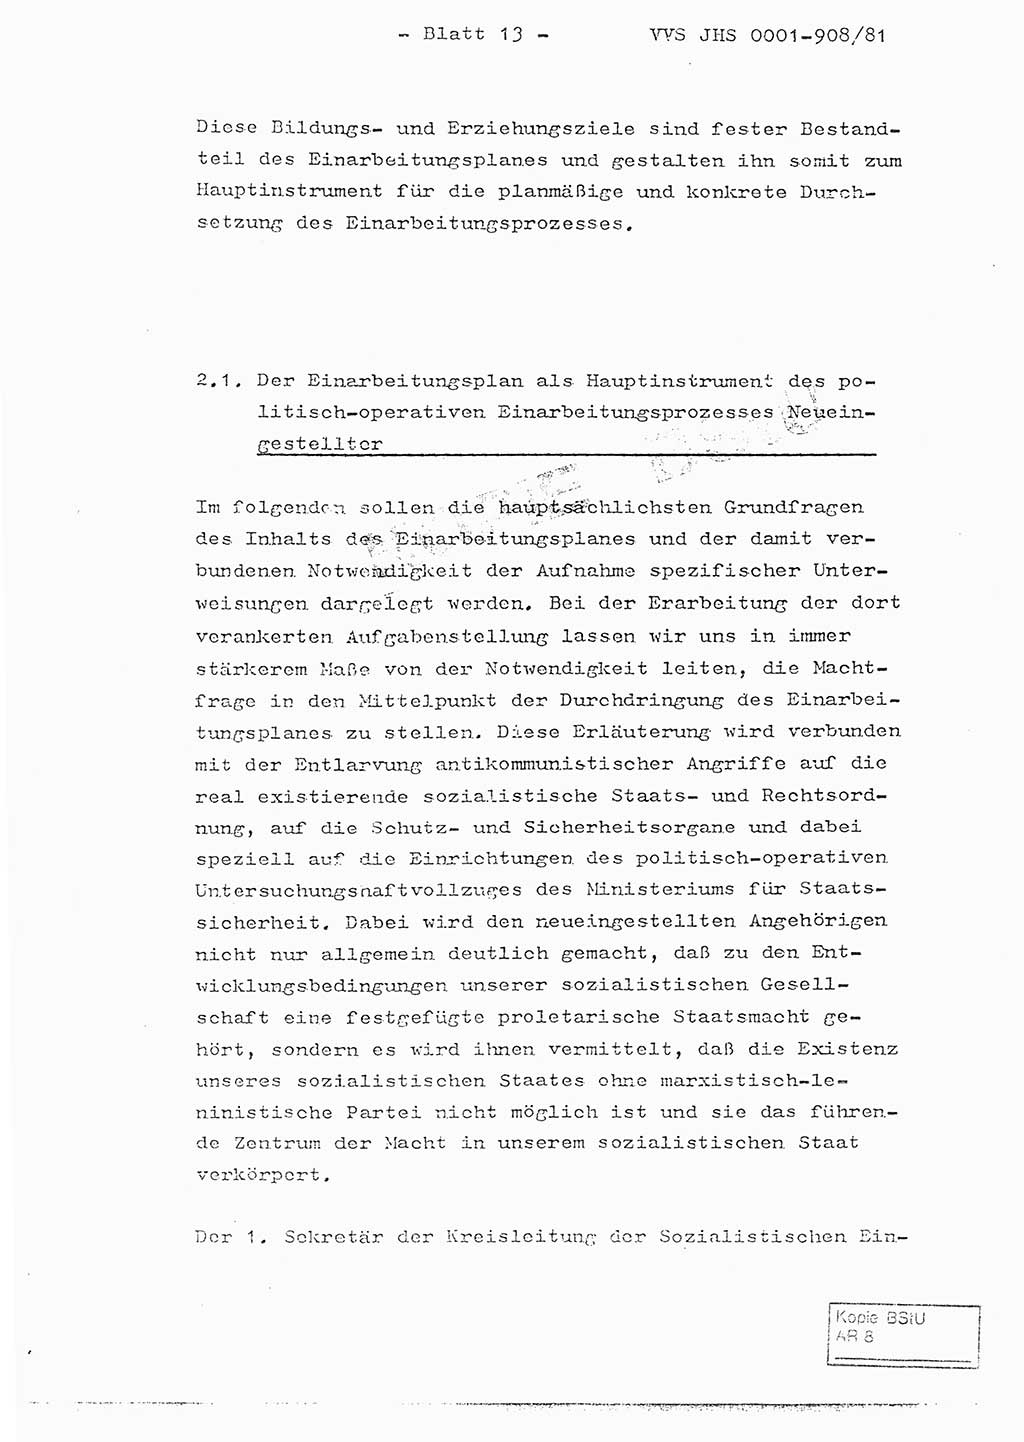 Fachschulabschlußarbeit Oberleutnant Wolfgang Wittmann (Abt. ⅩⅣ), Ministerium für Staatssicherheit (MfS) [Deutsche Demokratische Republik (DDR)], Juristische Hochschule (JHS), Vertrauliche Verschlußsache (VVS) o001-908/82, Potsdam 1982, Blatt 13 (FS-Abschl.-Arb. MfS DDR JHS VVS o001-908/82 1982, Bl. 13)